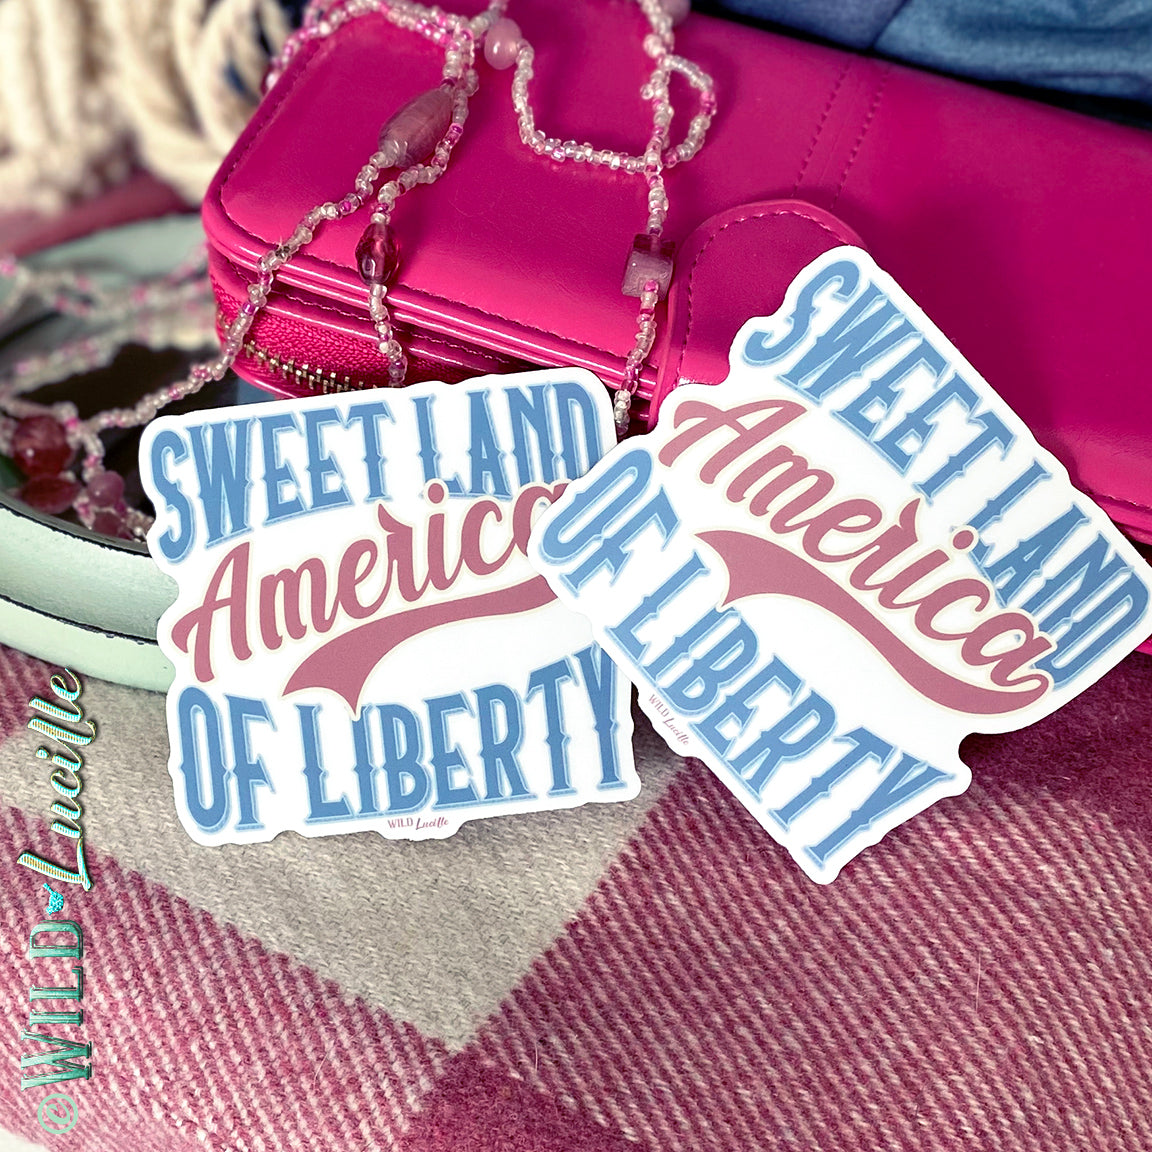 Sweet Land of Liberty - Patriotic Vinyl Sticker Decals